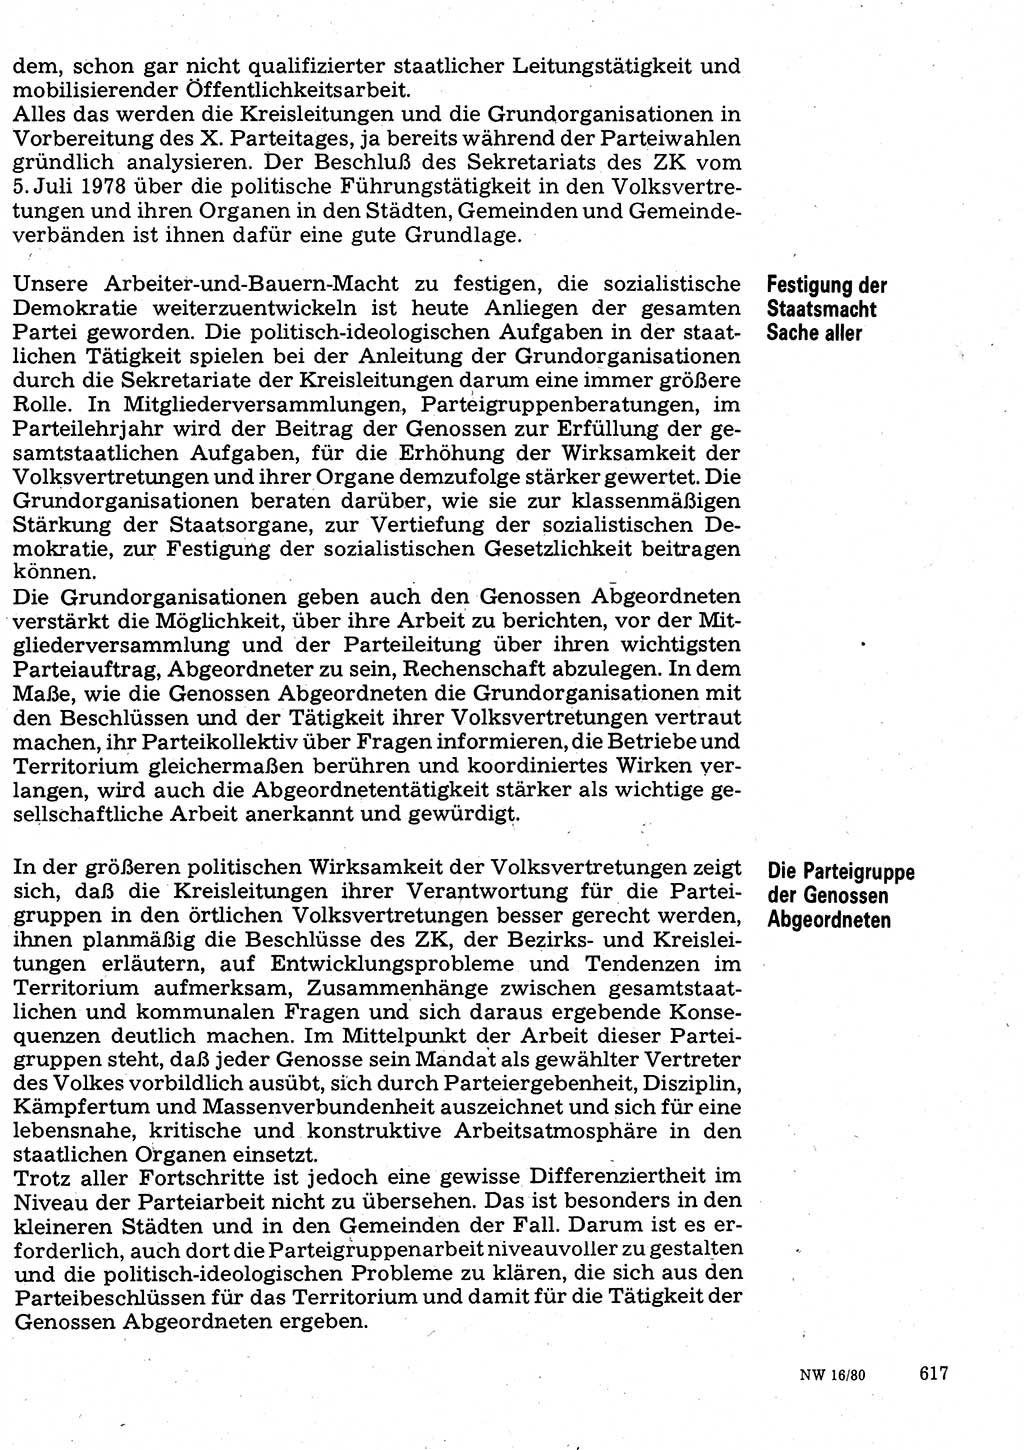 Neuer Weg (NW), Organ des Zentralkomitees (ZK) der SED (Sozialistische Einheitspartei Deutschlands) für Fragen des Parteilebens, 35. Jahrgang [Deutsche Demokratische Republik (DDR)] 1980, Seite 617 (NW ZK SED DDR 1980, S. 617)